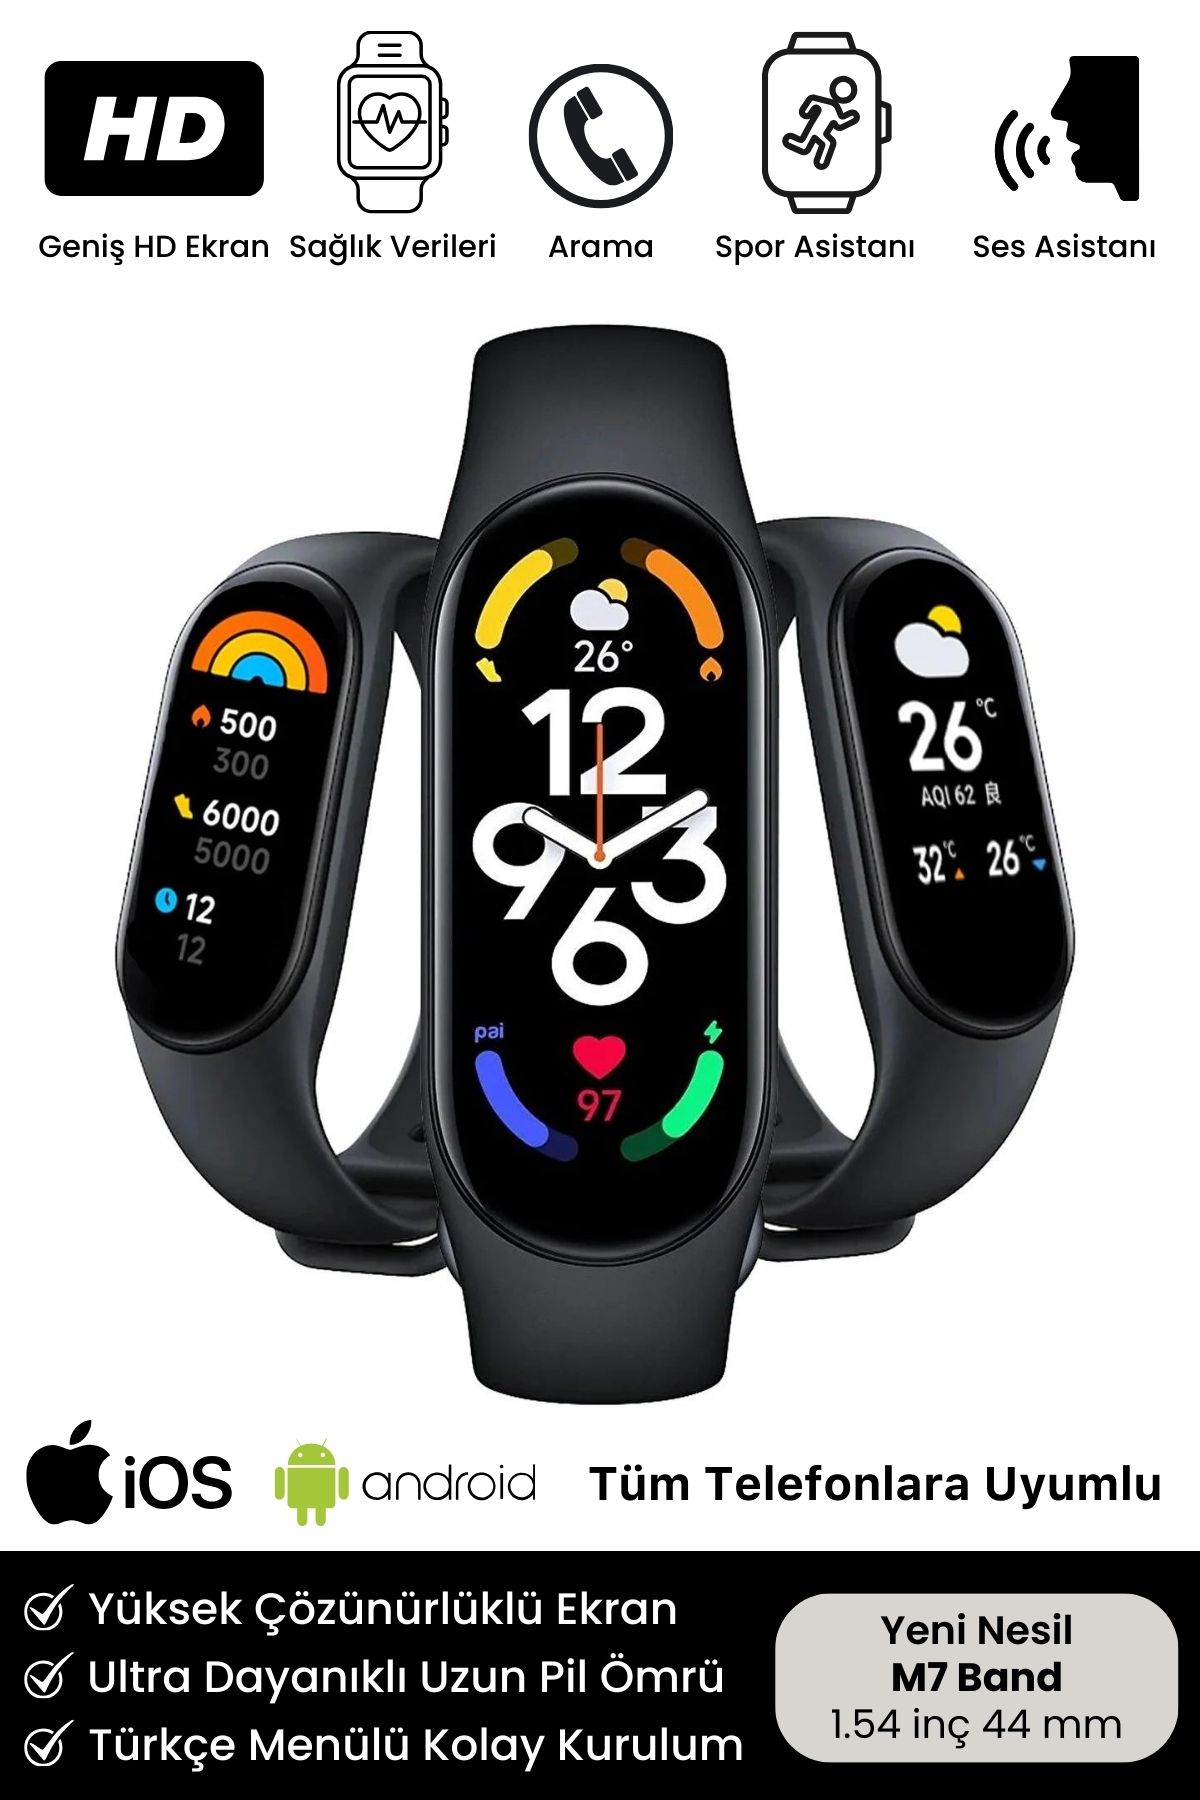 Noriyen Yeni Nesil Smart Watch M7 Band IOS Android Uyumlu Full Spor ve Sağlık Modlu Bileklik Akıllı Saat